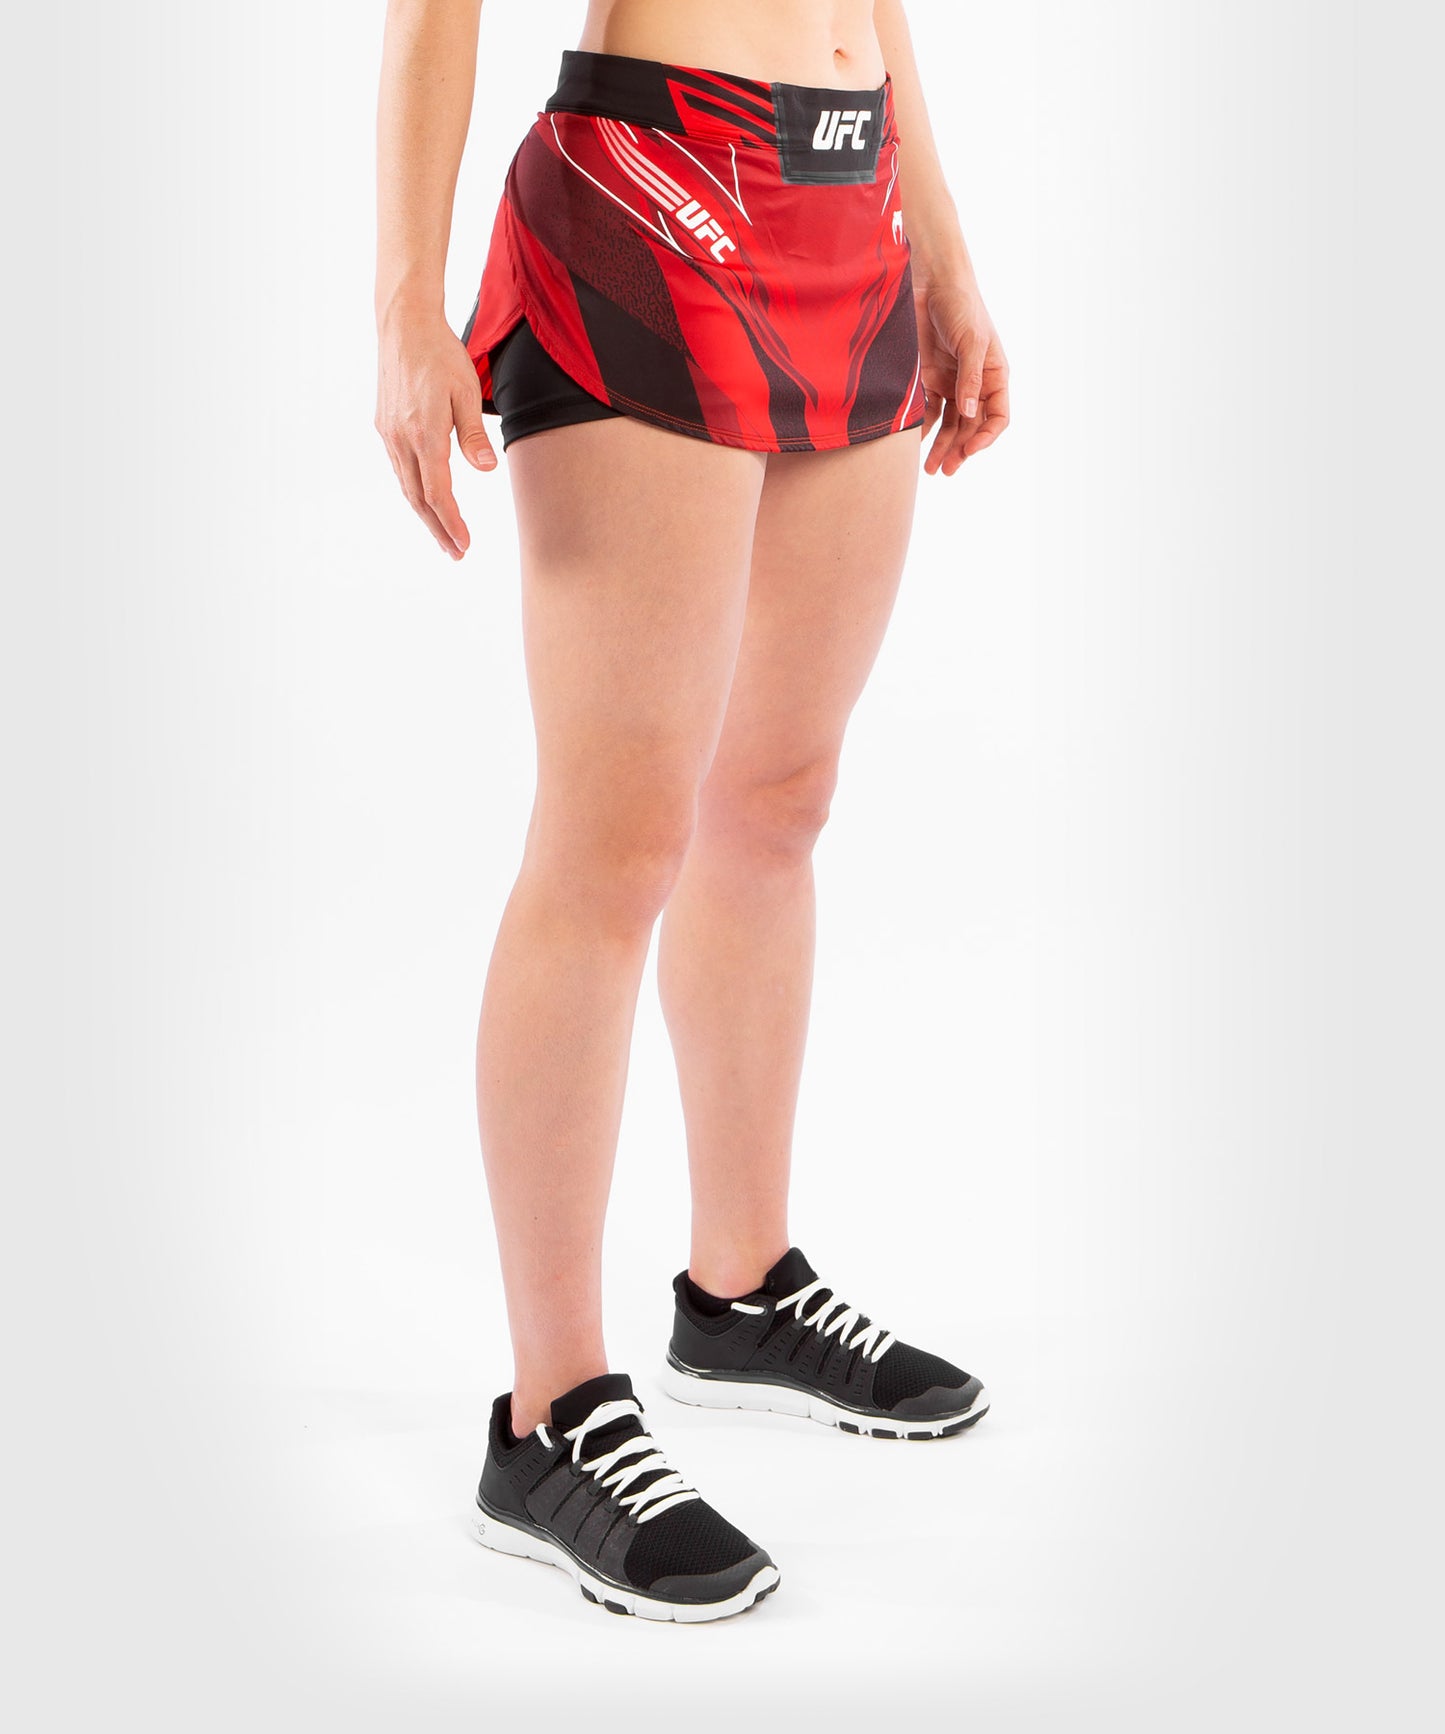 Falda-pantalón Para Mujer UFC Venum Authentic Fight Night - Rojo